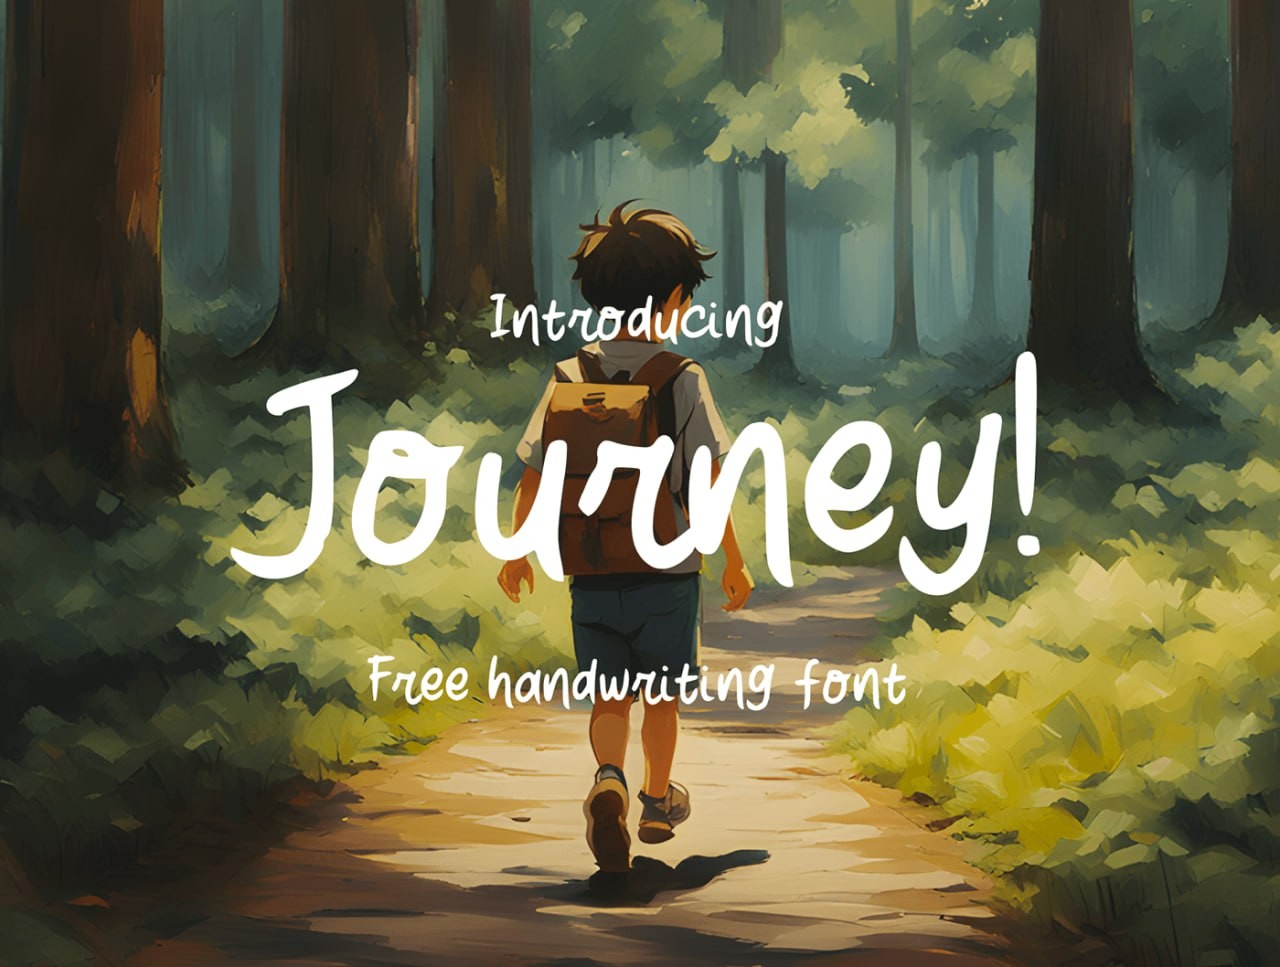 Journey可商用手写英文字体 设计素材 第1张